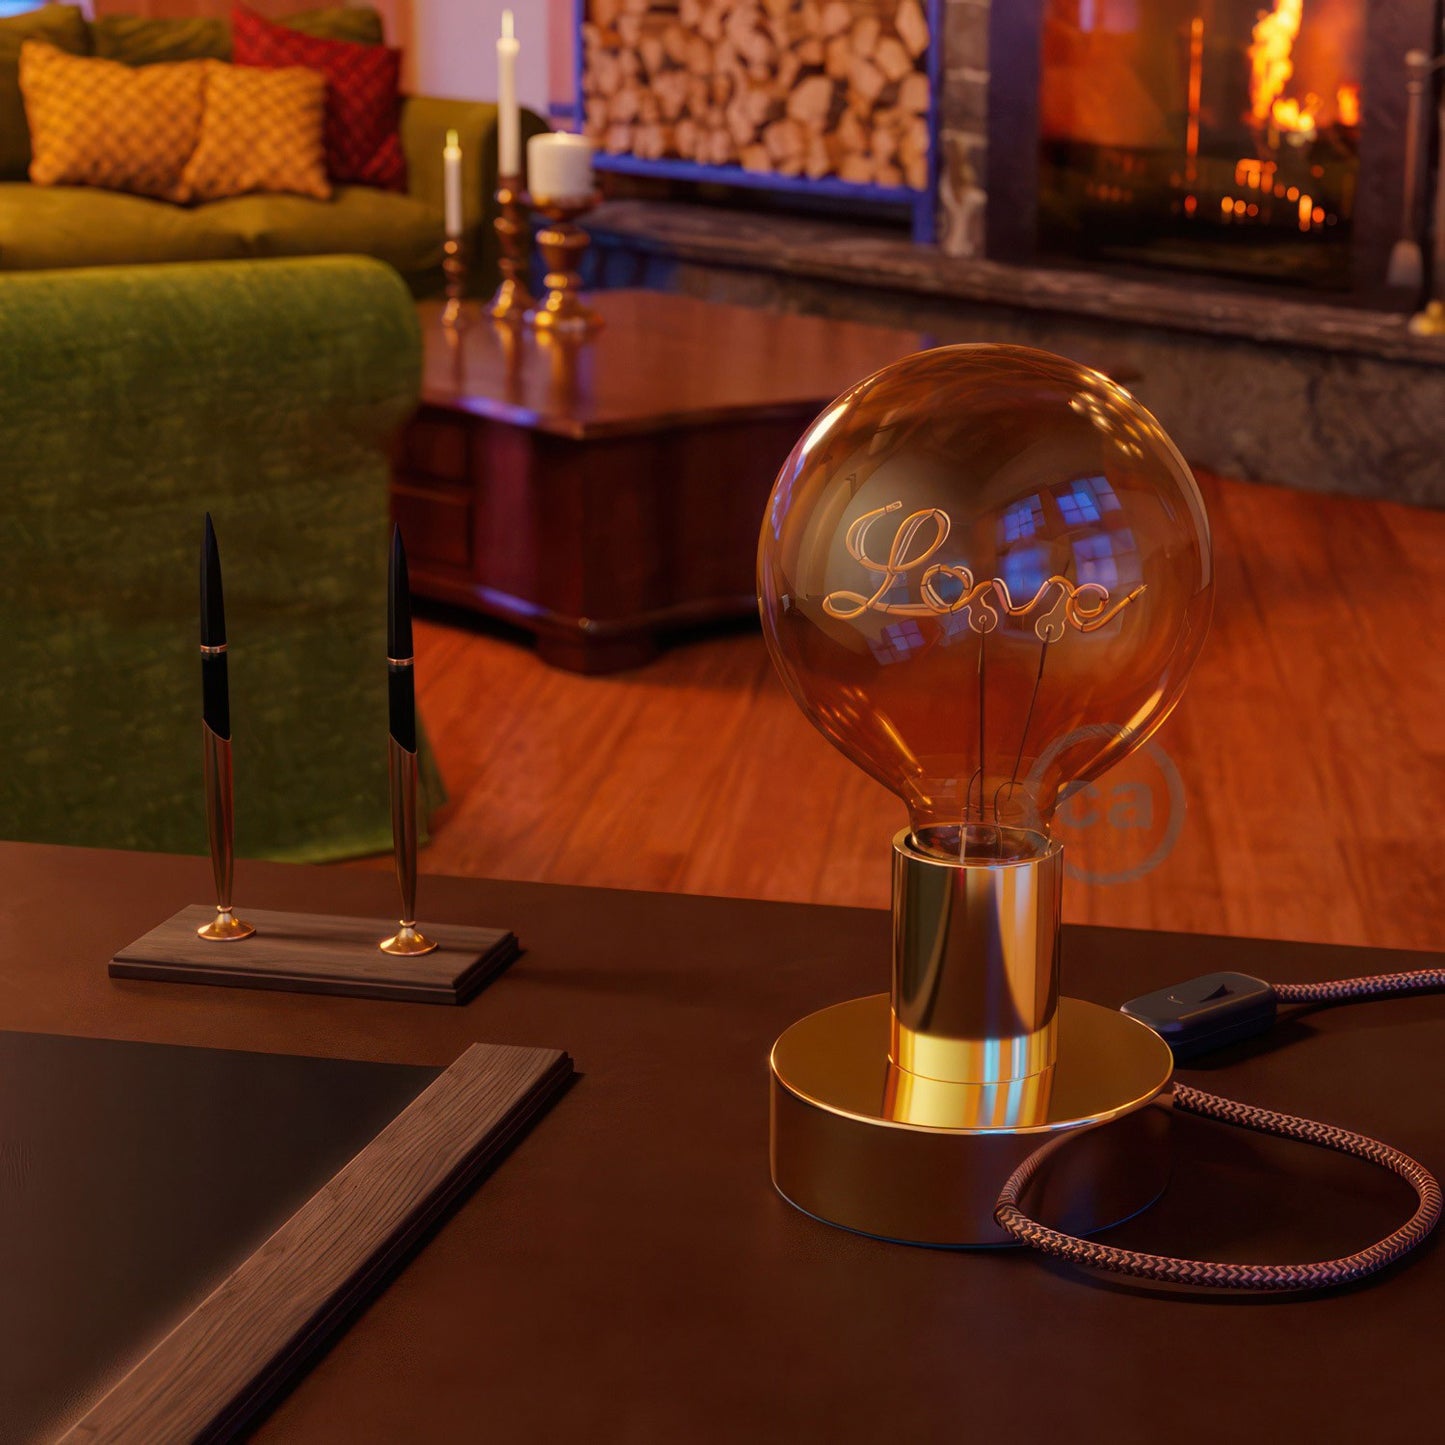 Kultainen LED-lamppu pystysuoraan lamppuun Globe G125 5W E27 koristeellinen Vintage 2000K